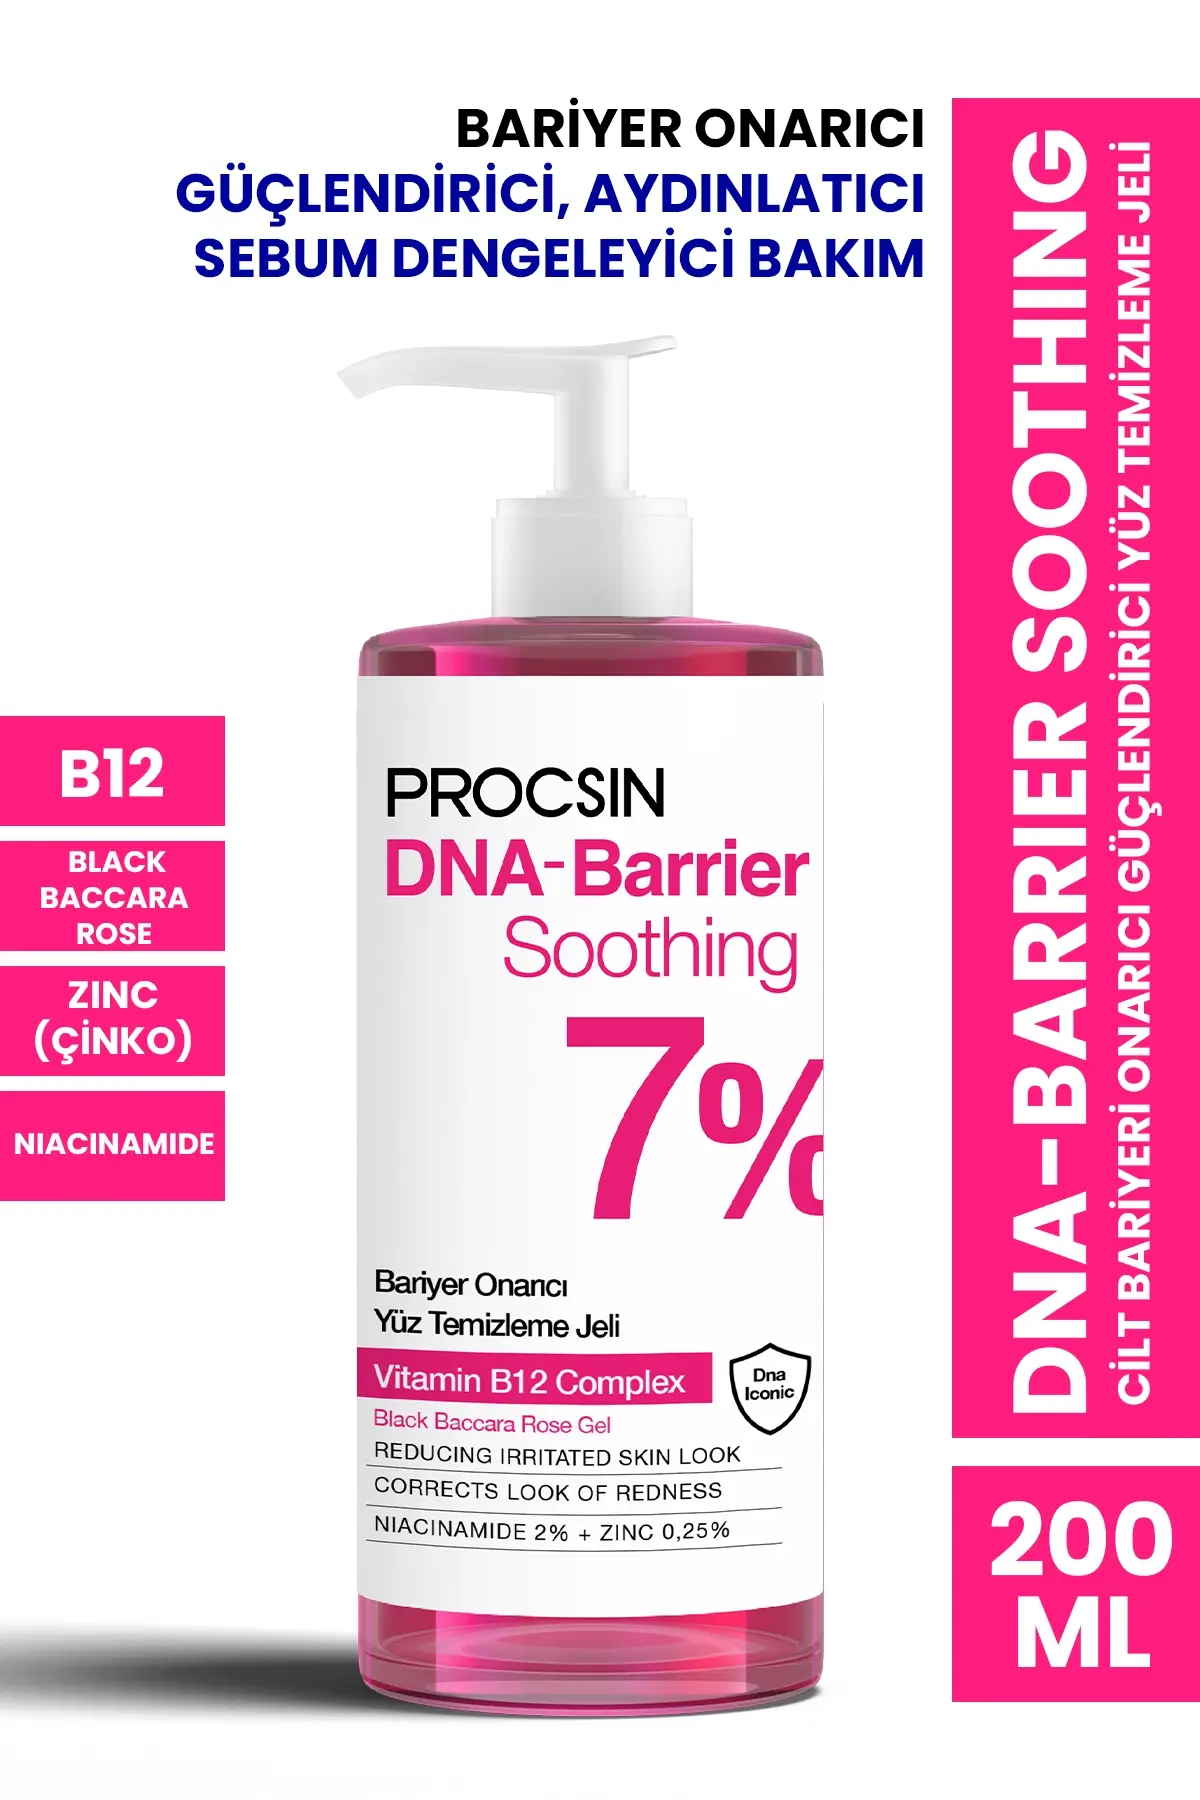 PROCSIN DNA-Barrier Soothing Cilt Bariyeri Onarıcı Güçlendirici Yüz Temizleme Jeli - 1